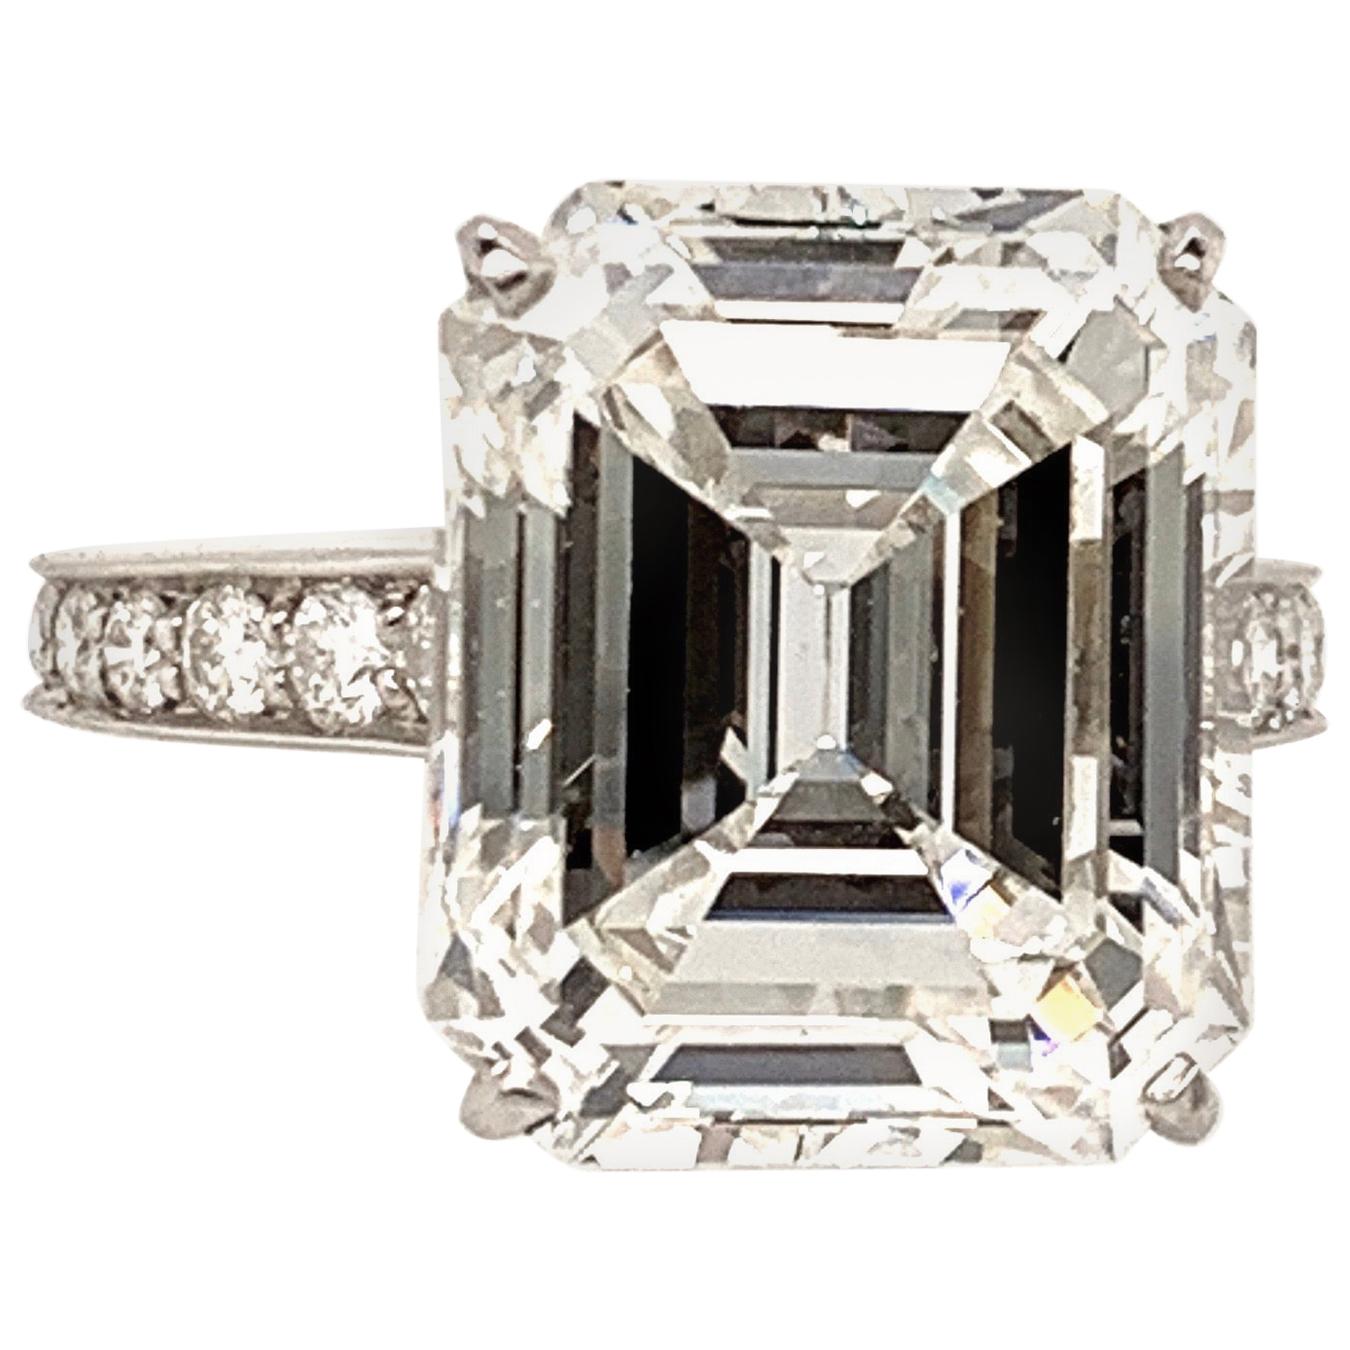 Cartier GIA Certified 10.29 Carat Emerald Cut Diamond Ring